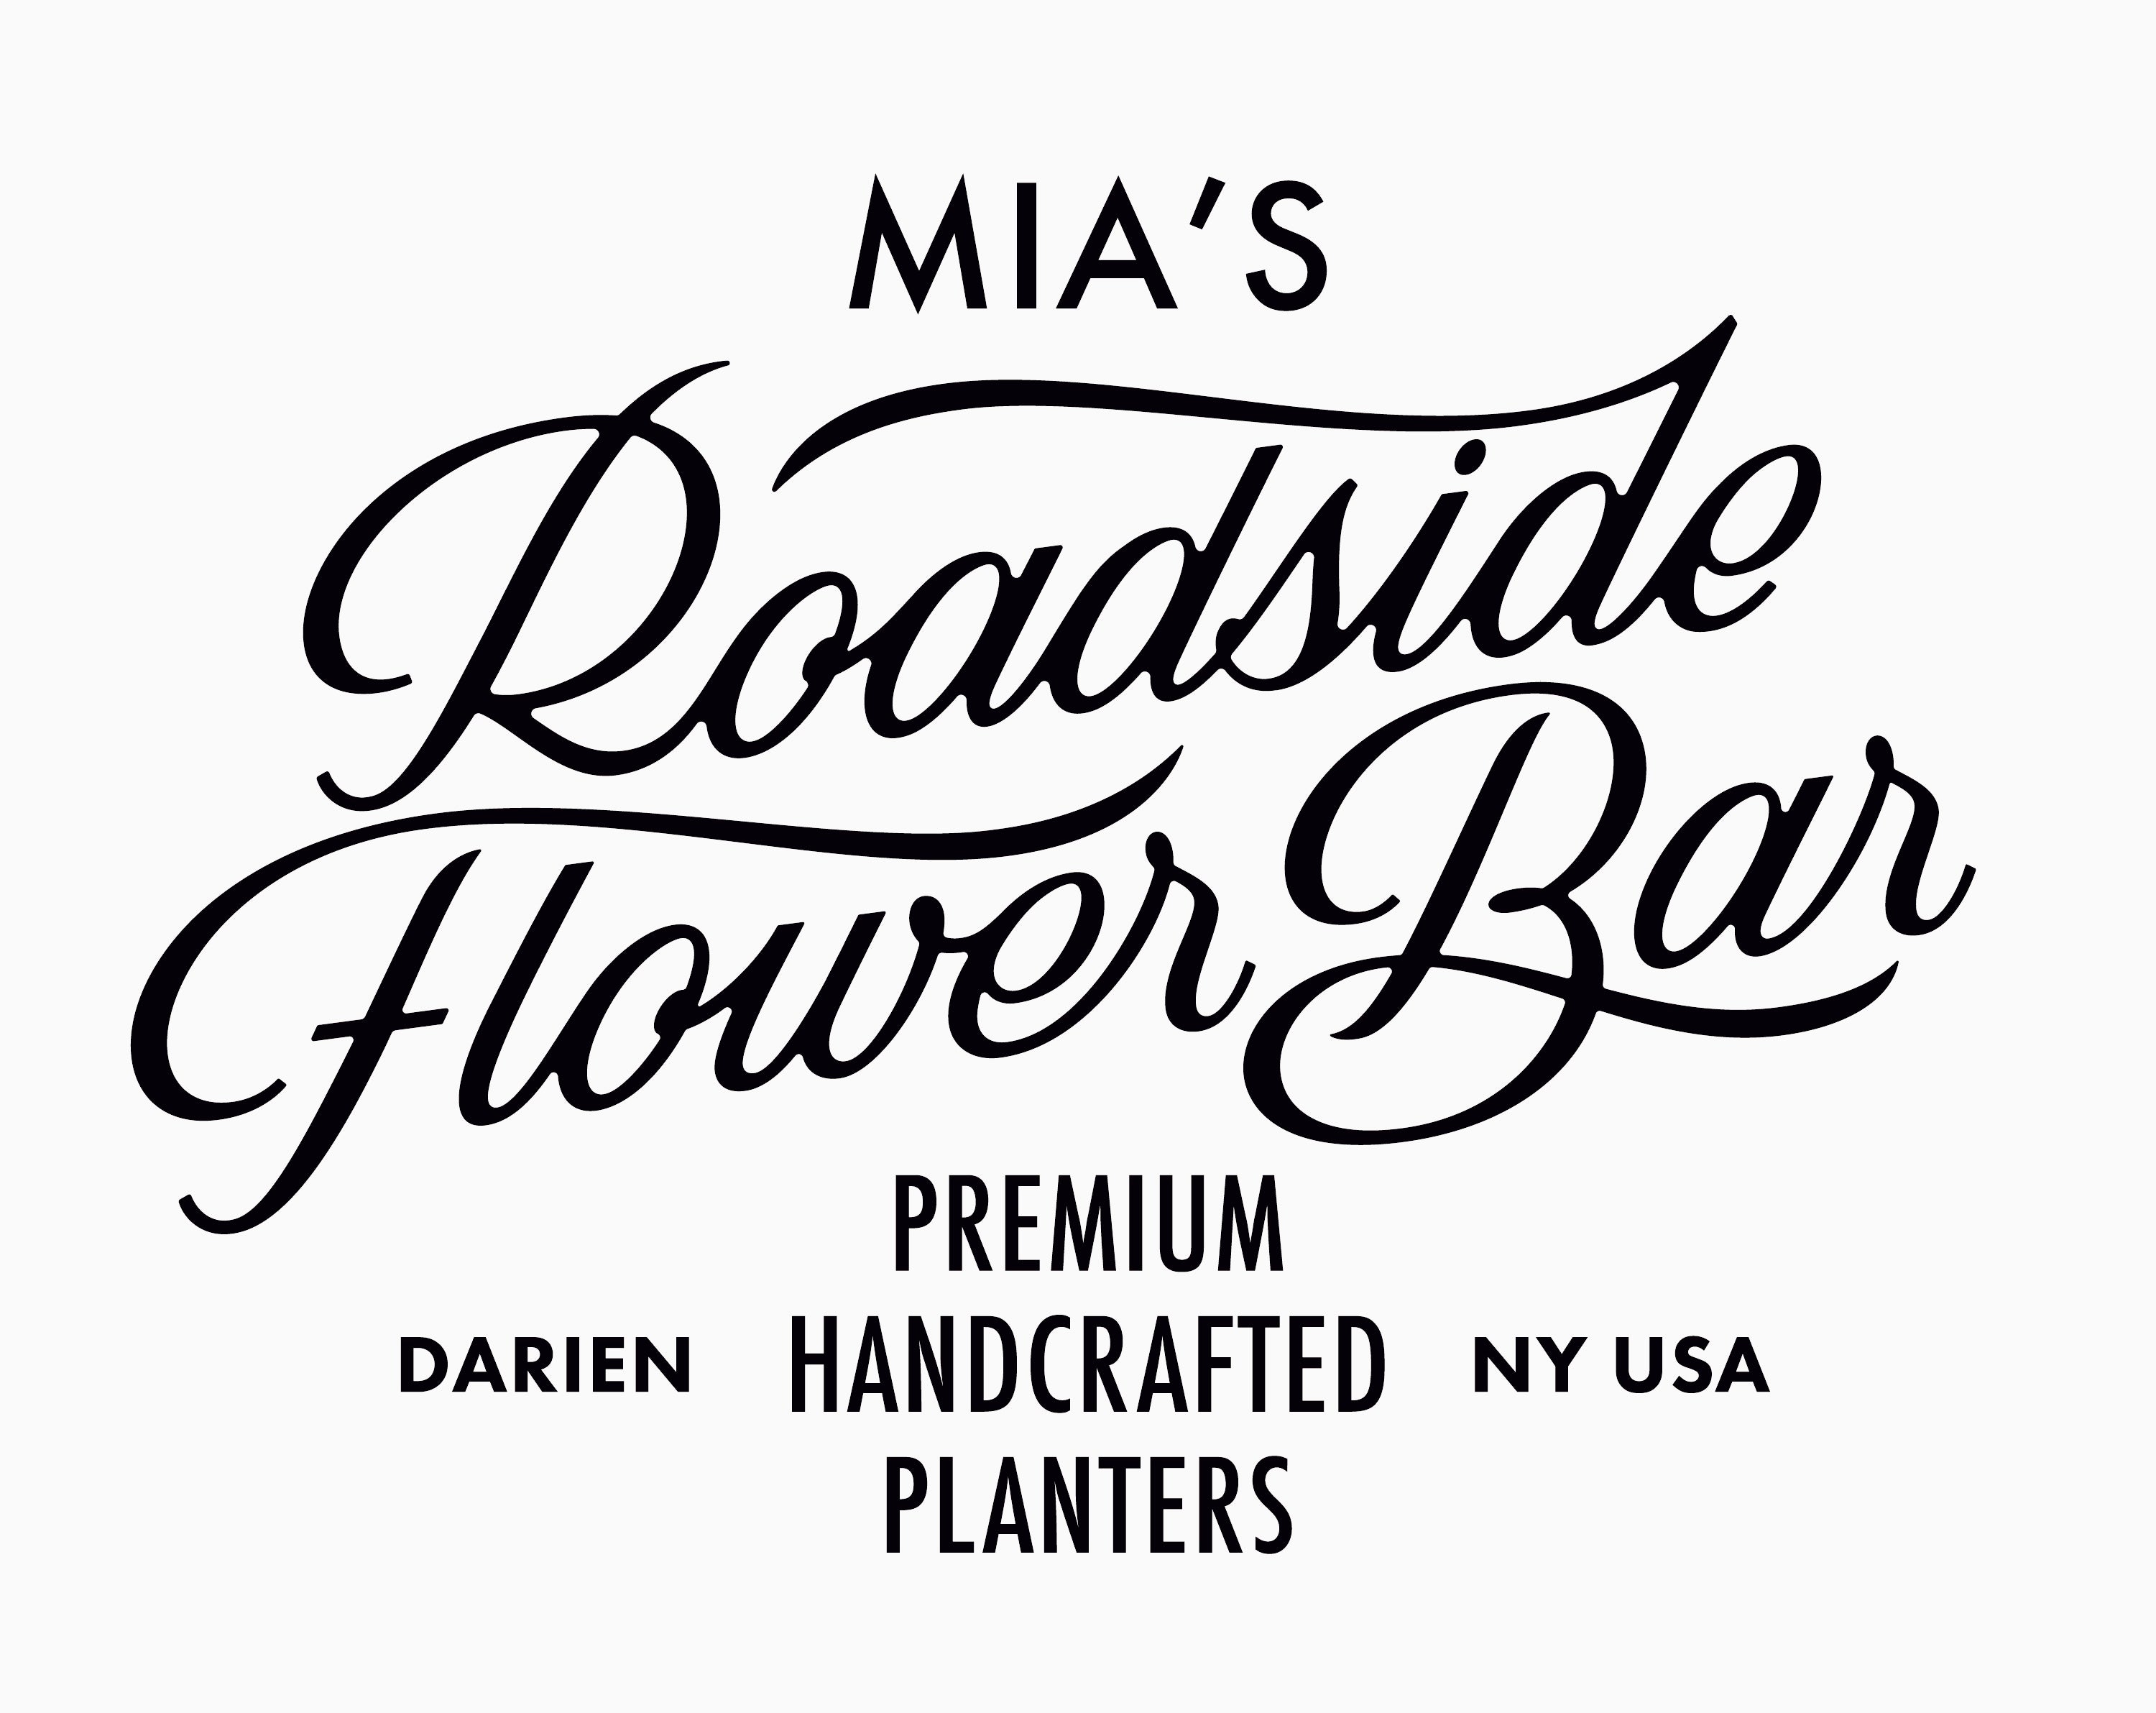 Roadside Flower Bar 